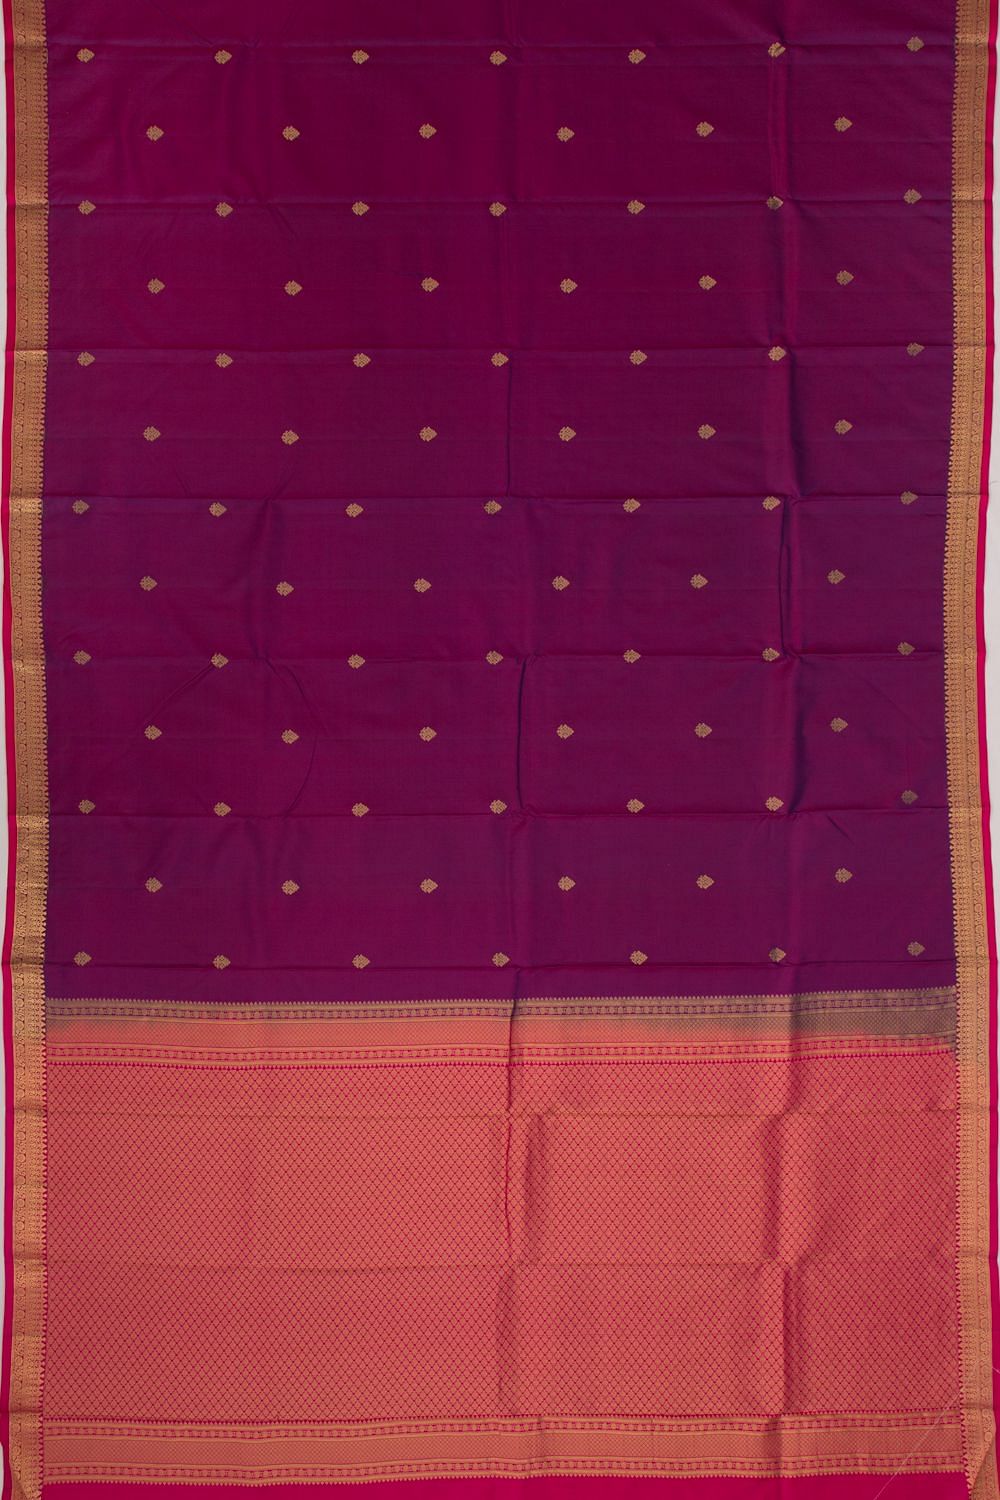 Kuppadam silk sarees by Kaladhar Sarees and Fabrics